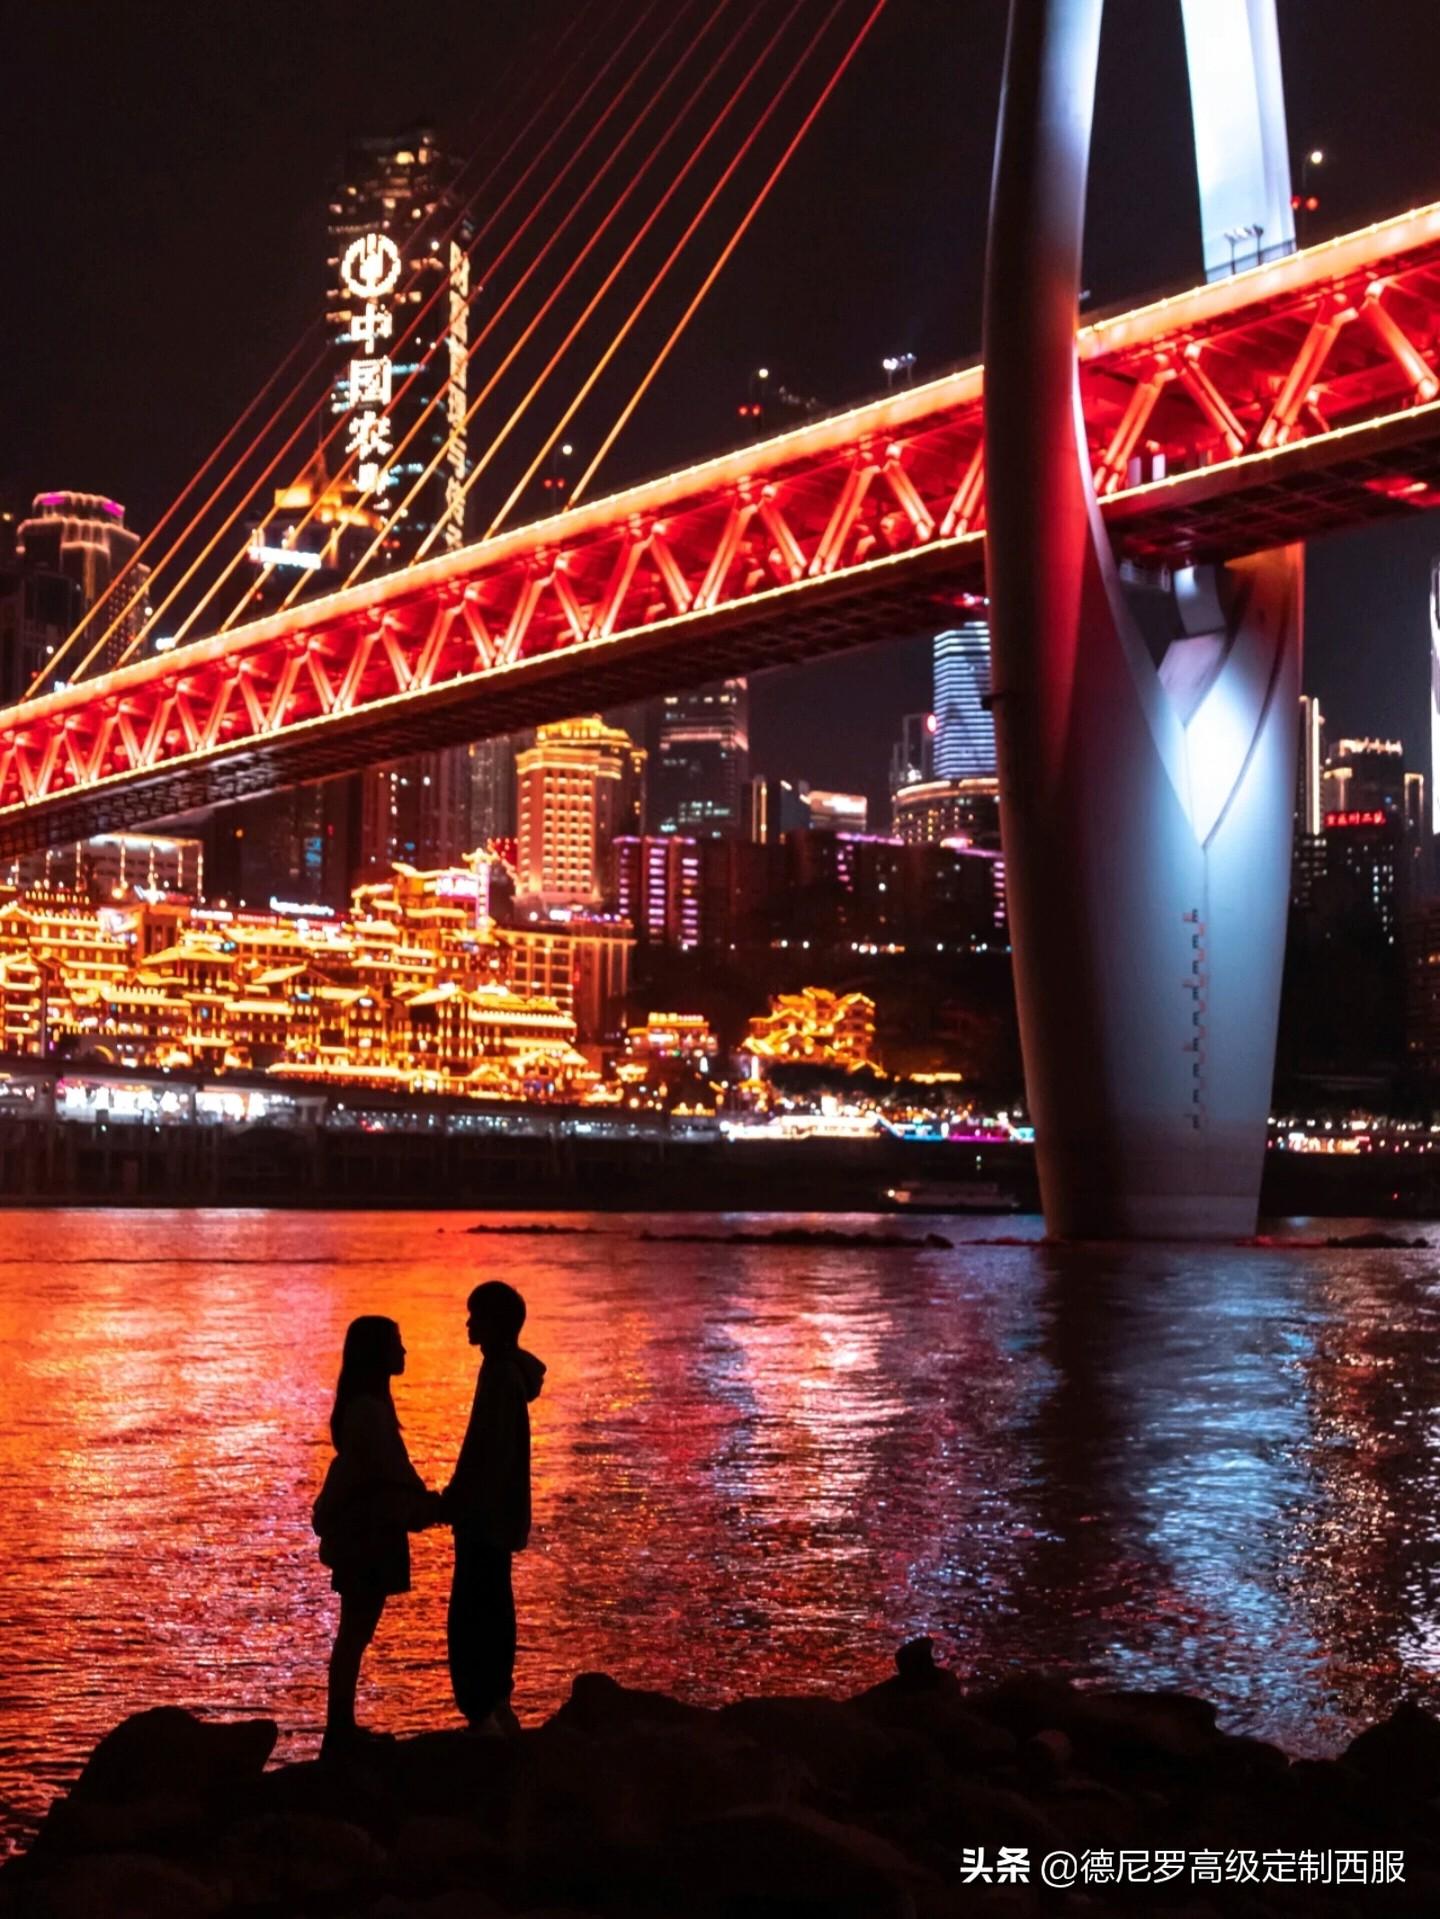 重庆拍一套情侣写真多少钱_重庆写真拍摄_重庆情侣写真拍照网红店地址